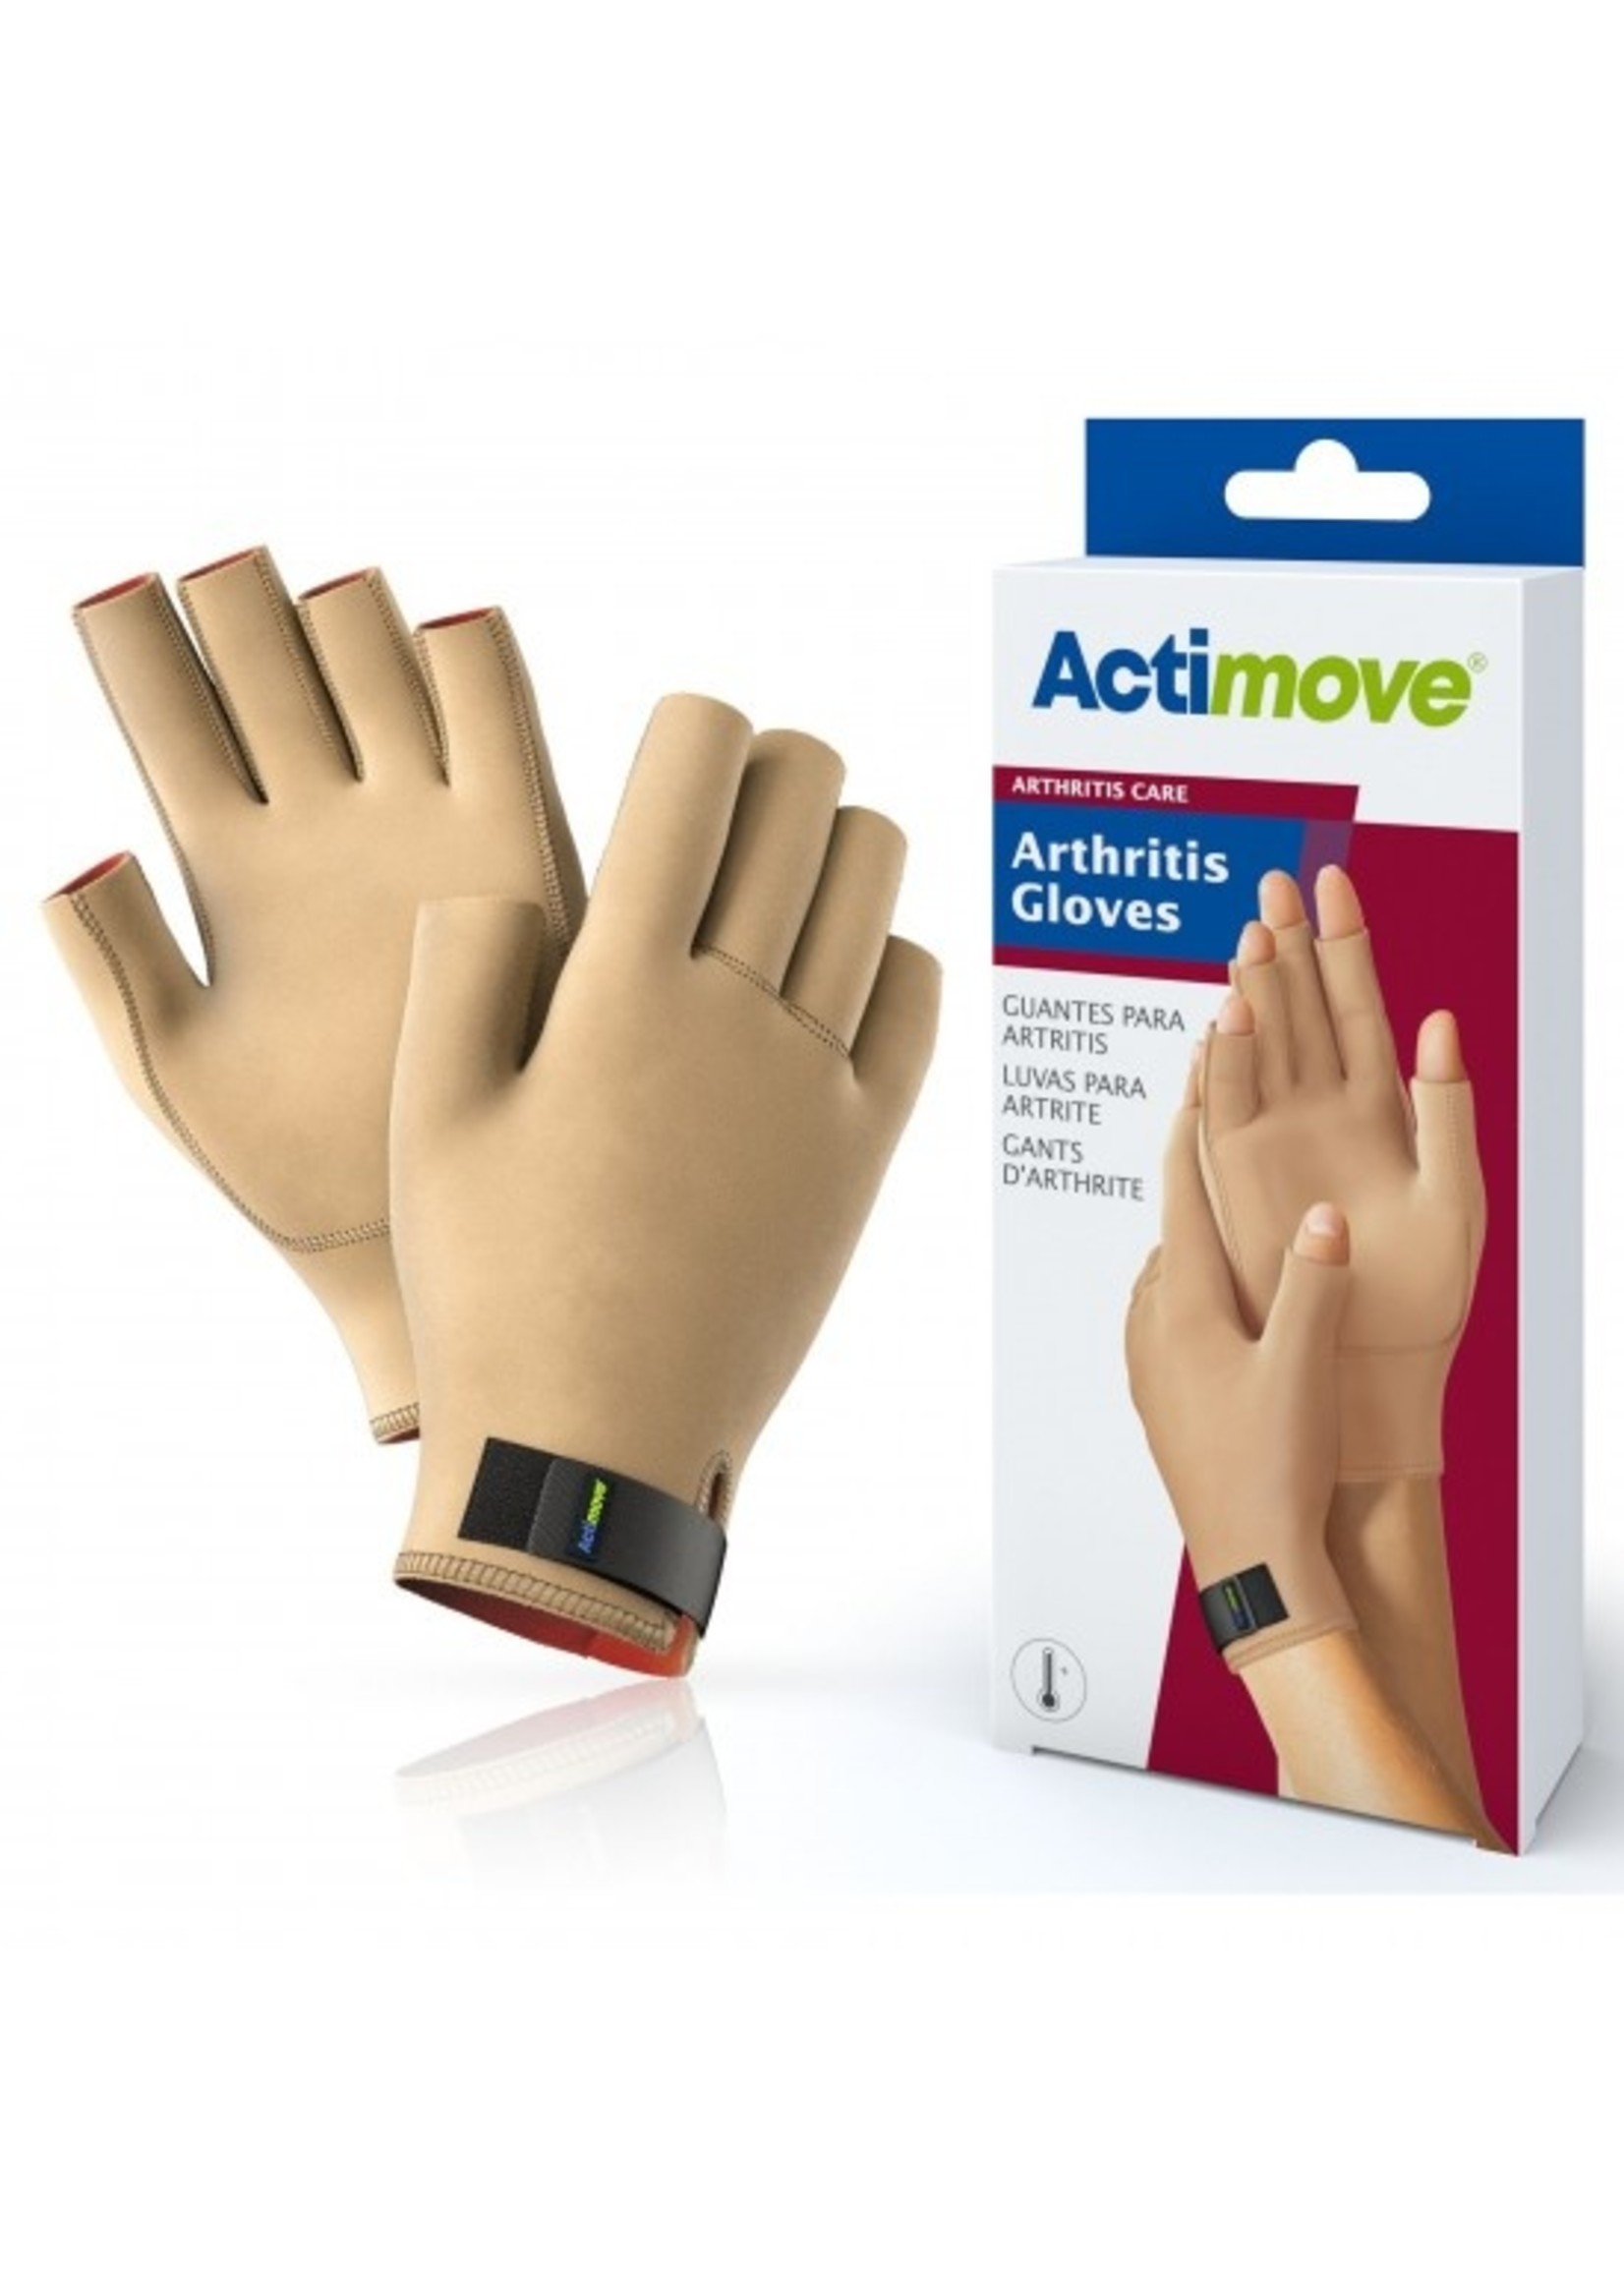 ActiMove Arthritis Gloves - Arthritis Care